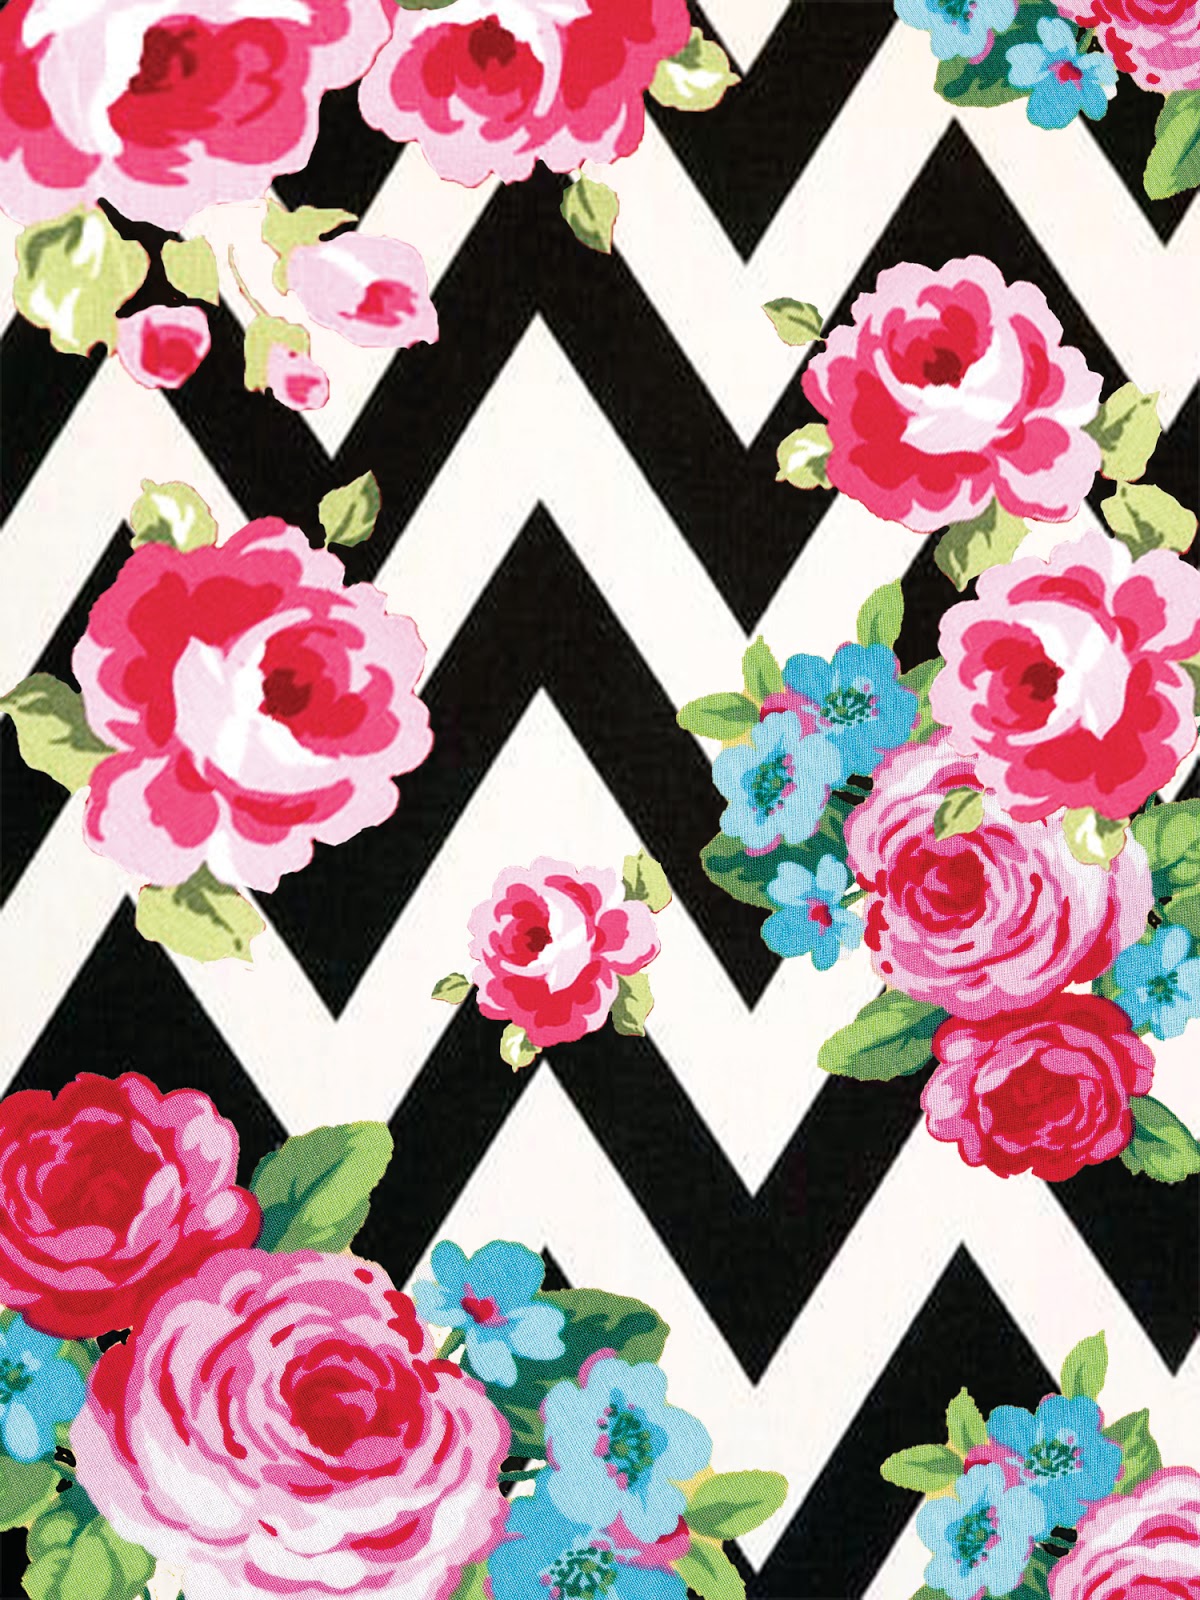 floral wallpaper,pink,pattern,rose,floral design,garden roses